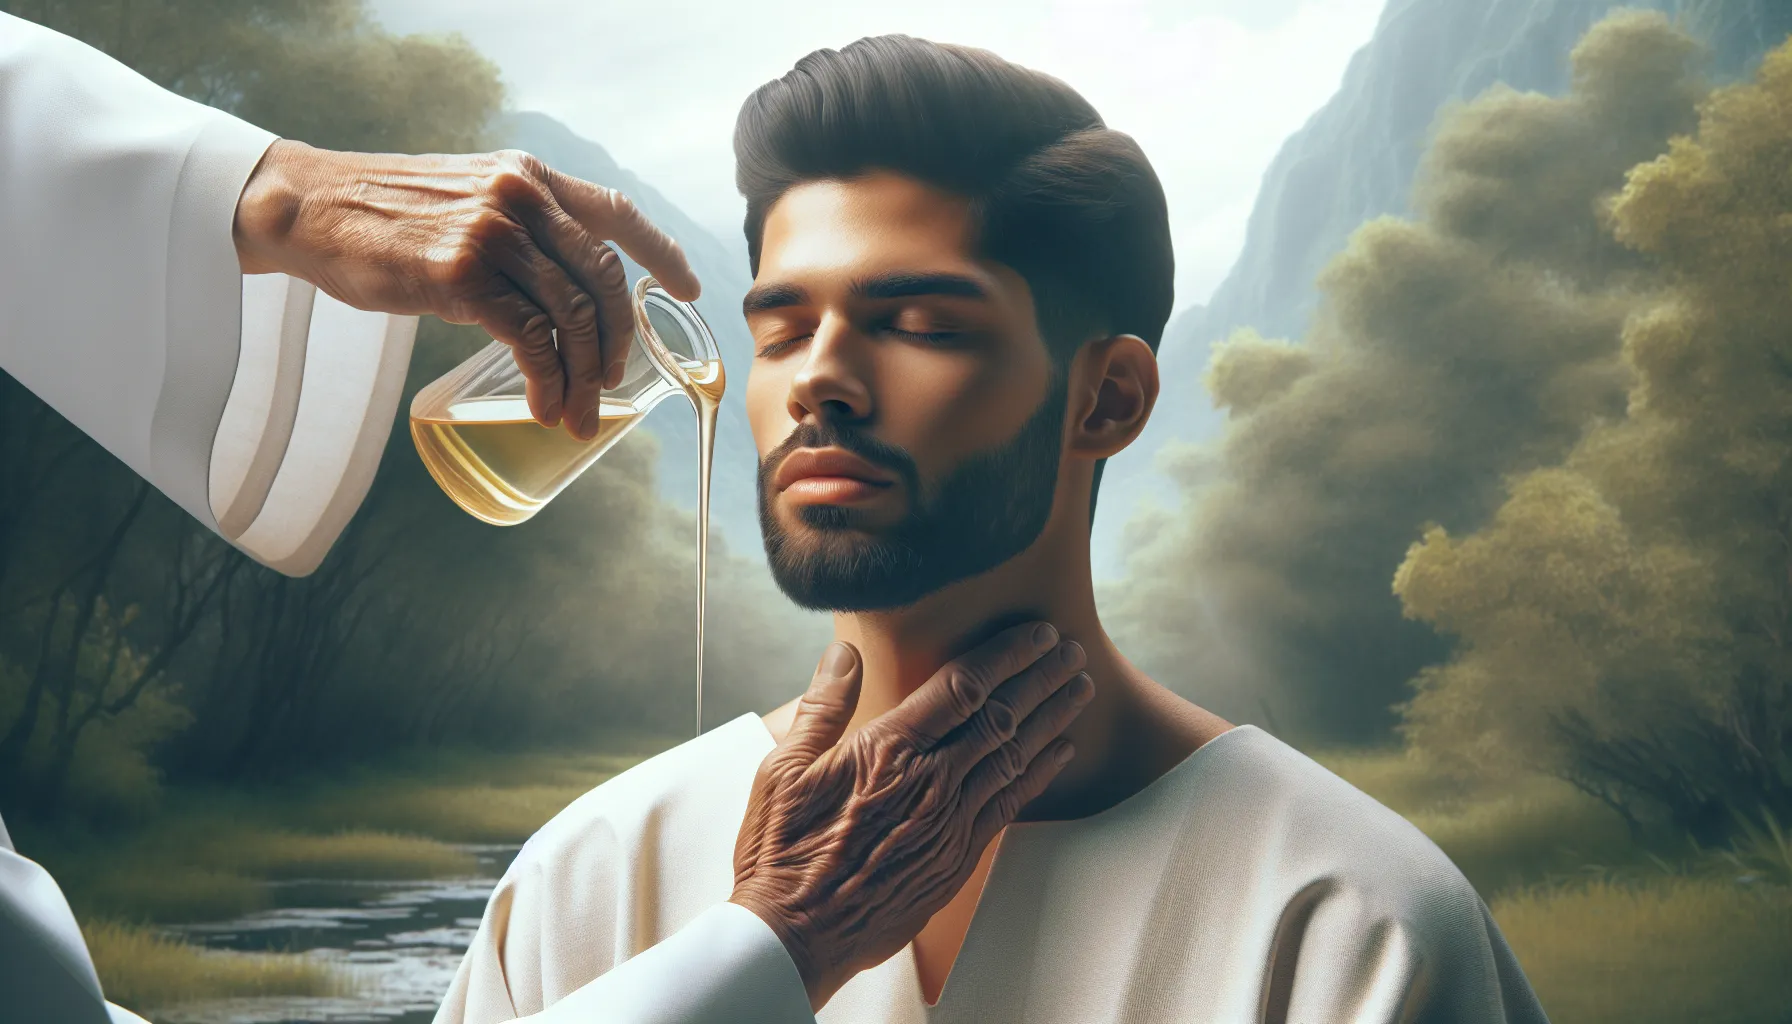 Imagen de una persona ungida con aceite, simbolizando la unción en la tradición bíblica.